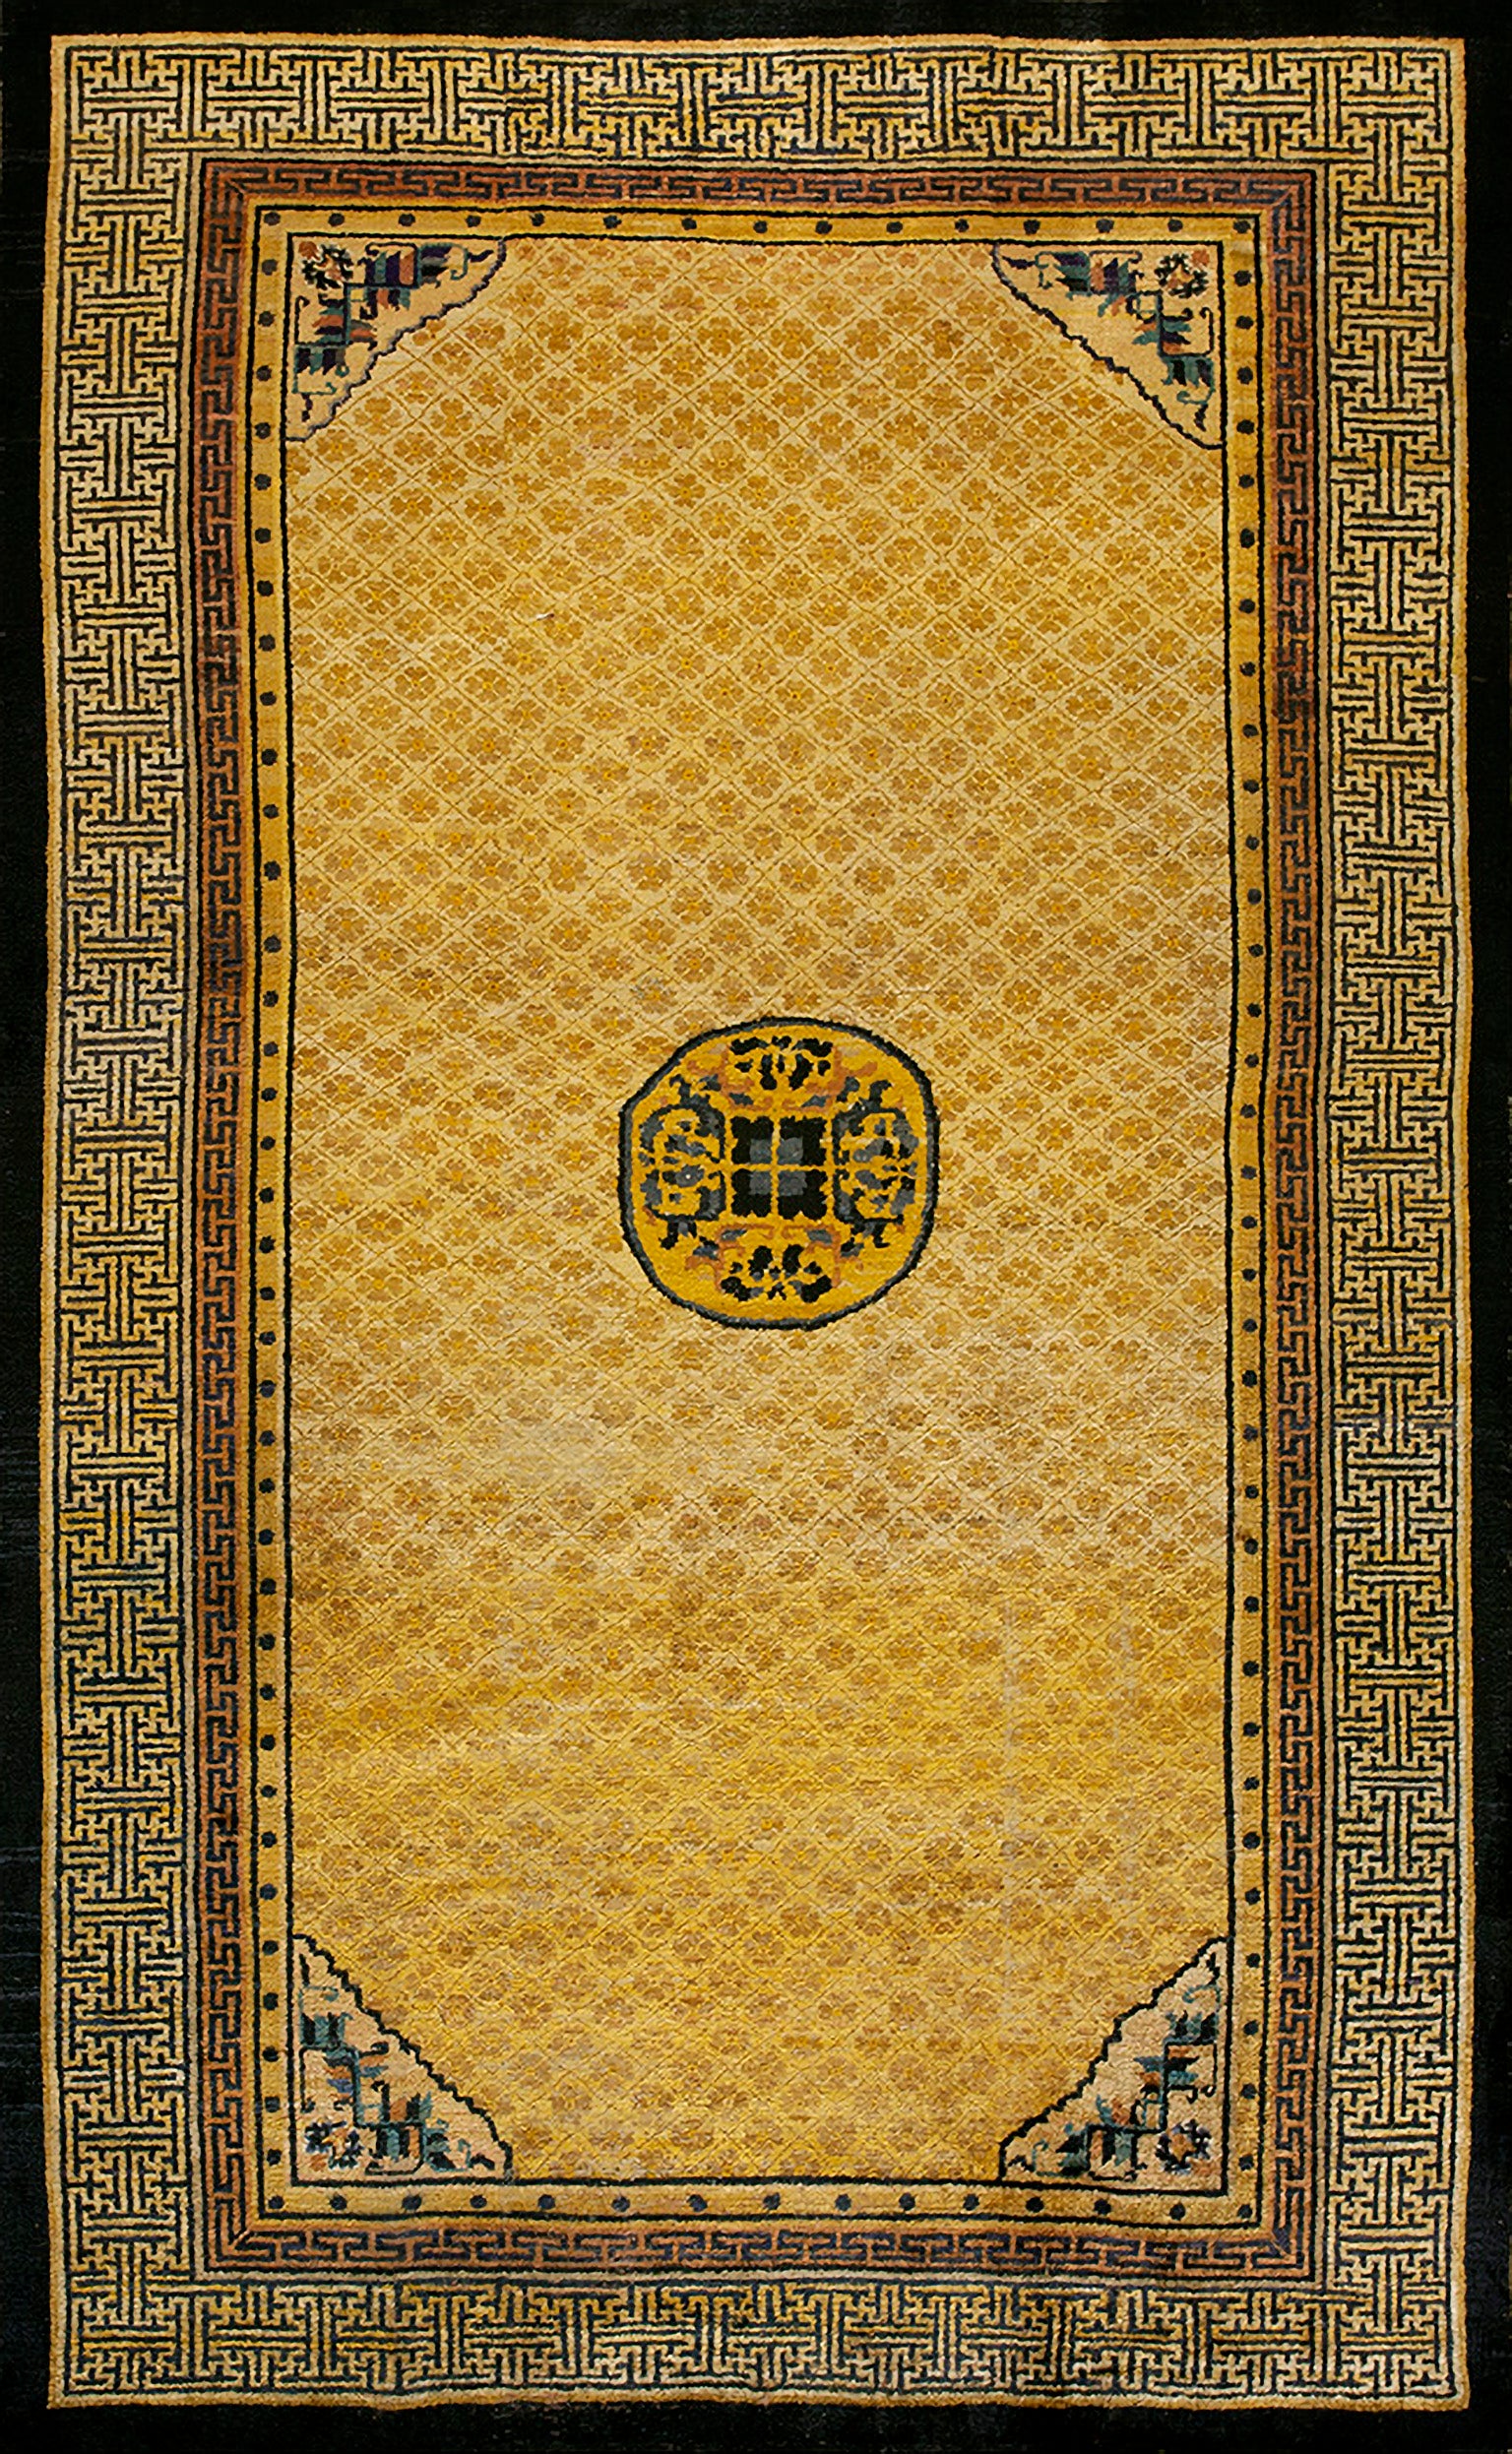 Chinesischer Ningxia-Teppich aus Seide aus dem 19. Jahrhundert ( 6' x 9'10" - 182 x 300)